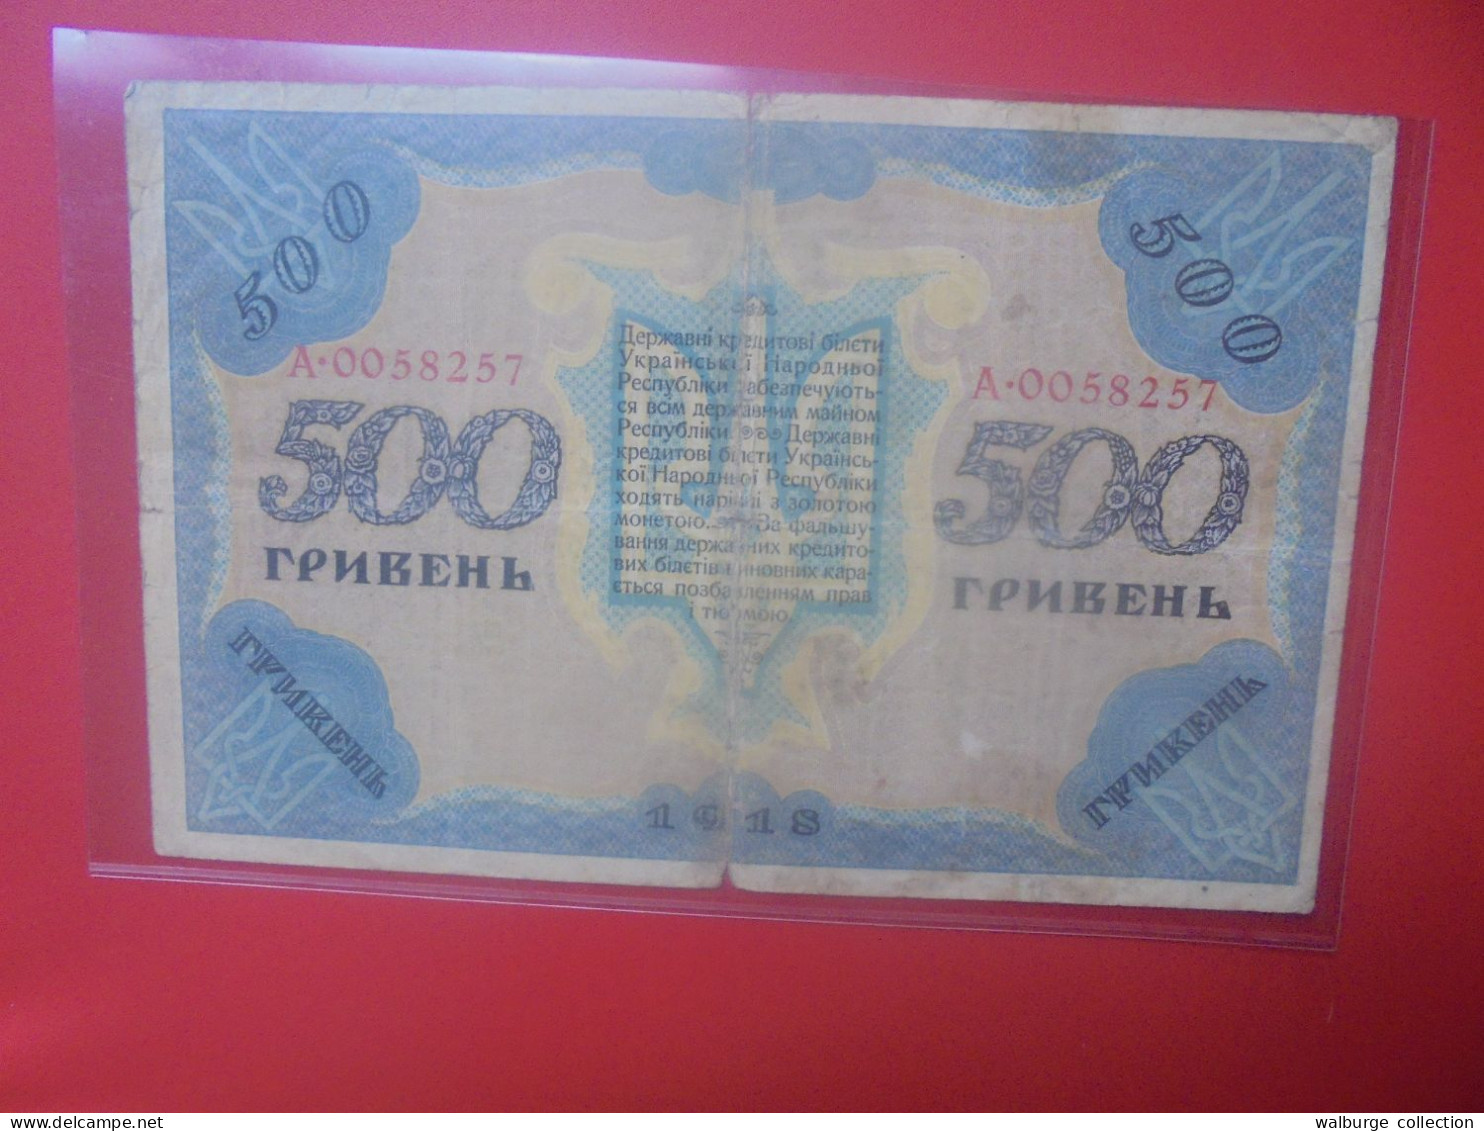 UKRAINE 500 HRYVEN 1918 Circuler (B.33) - Oekraïne